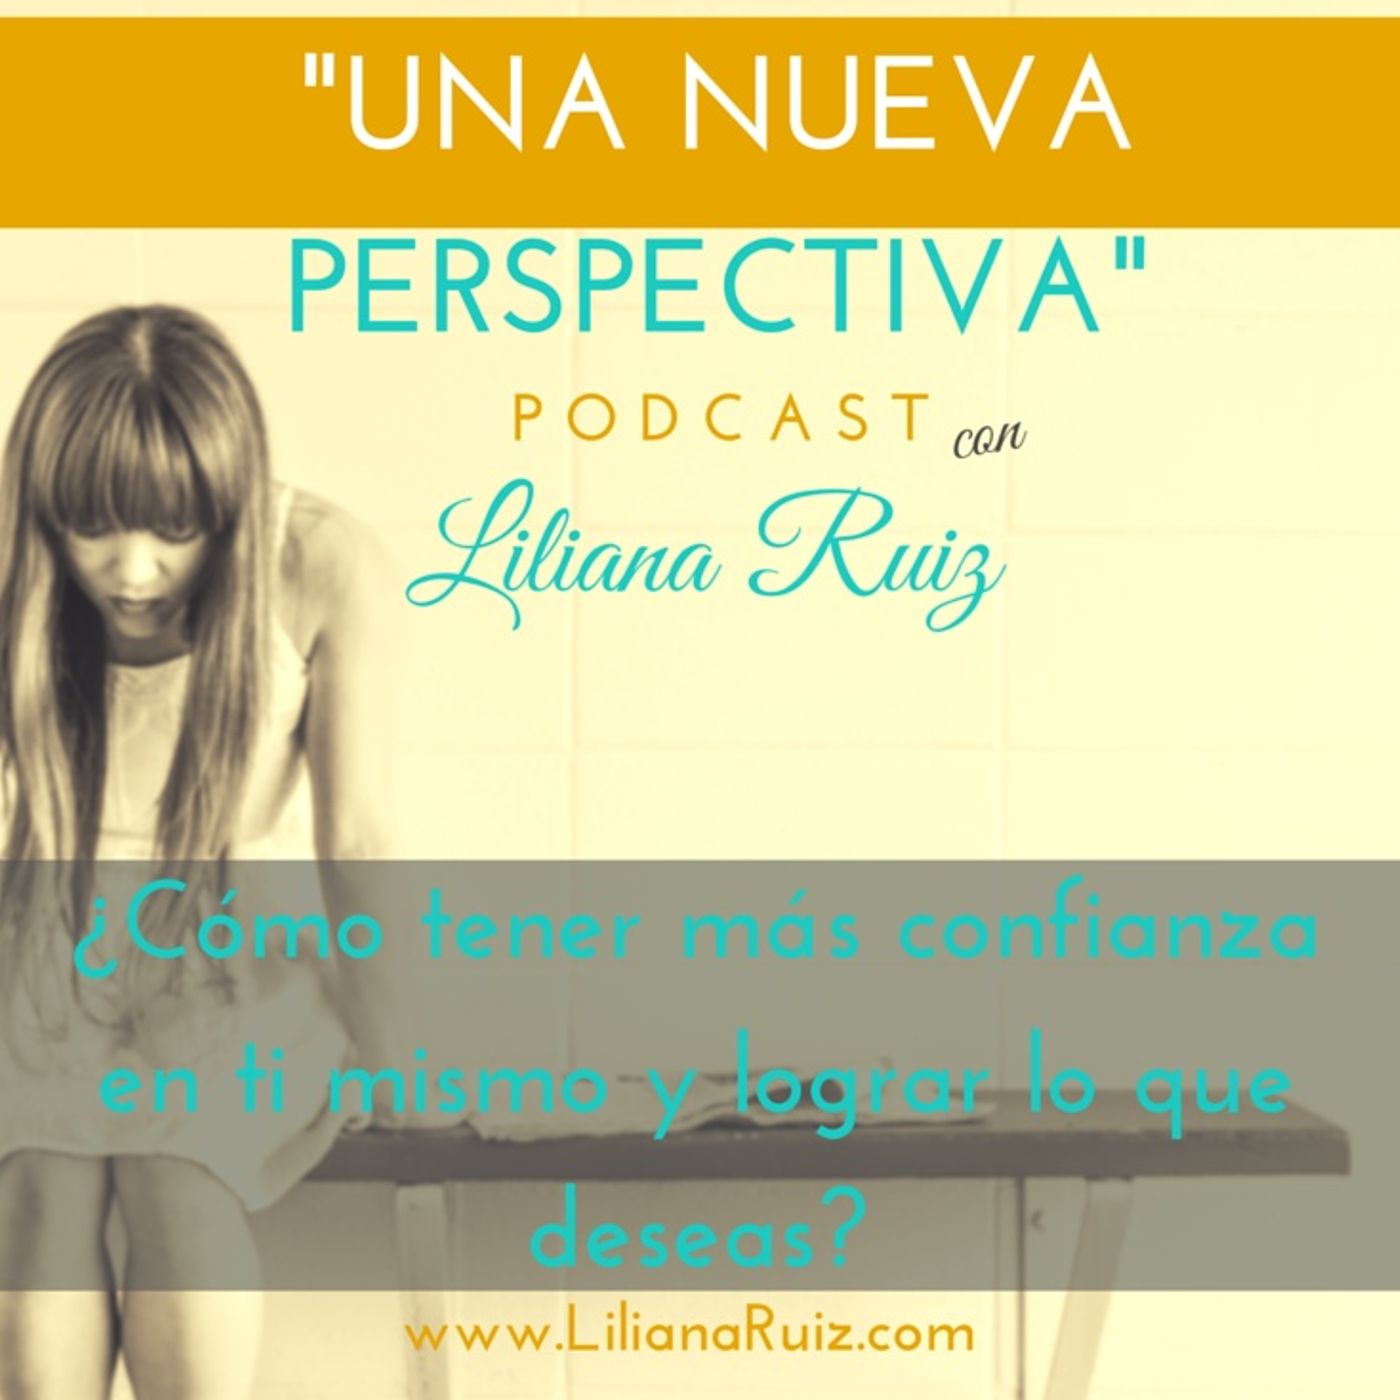 ¿Cómo Tener Más Confianza En Ti Mismo y Lograr Lo Que Deseas?Con Liliana Ruiz #3